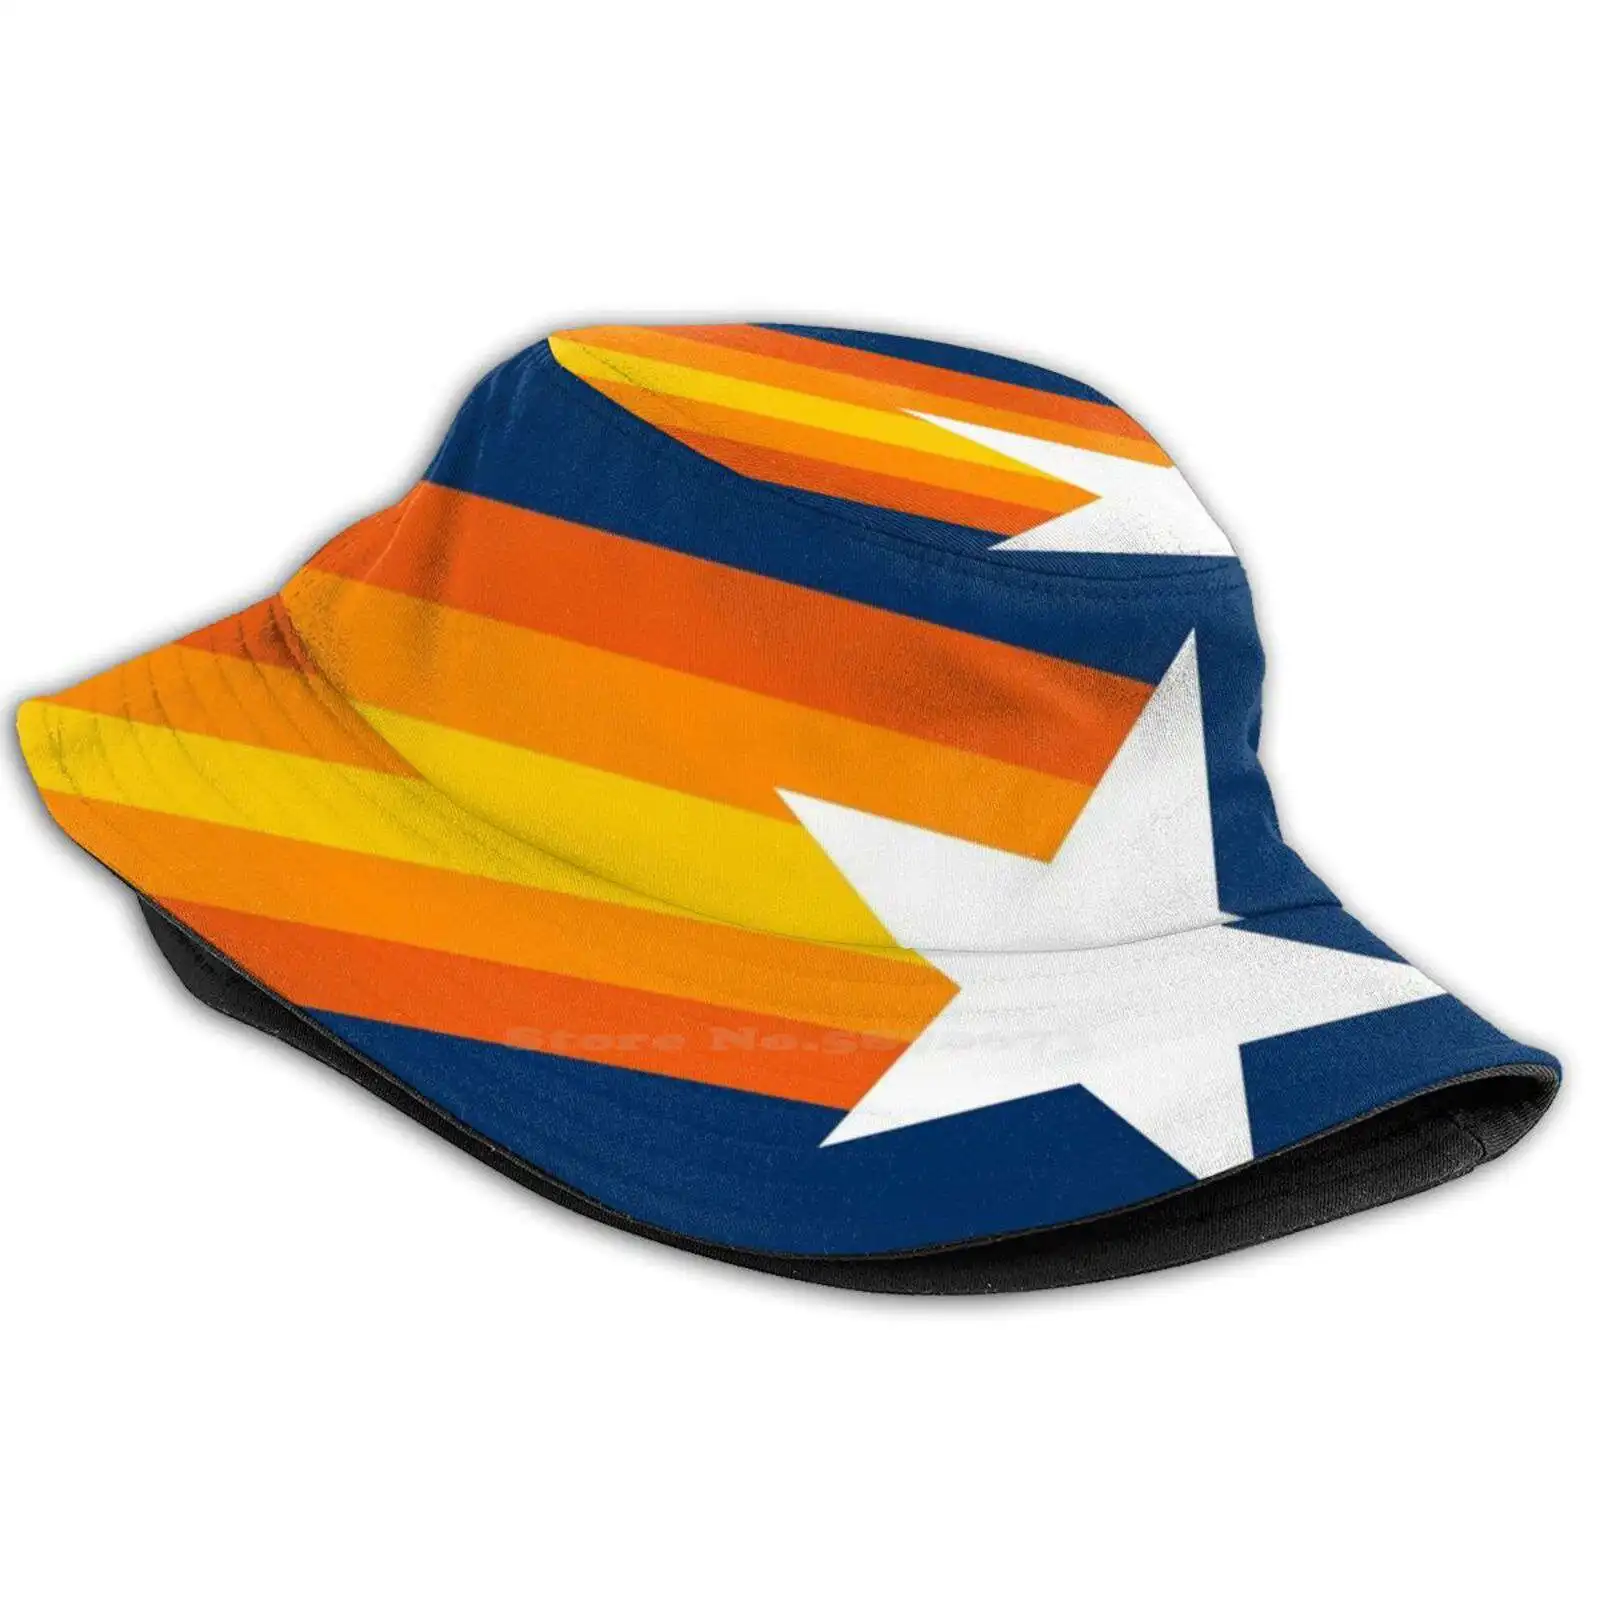 Stros Shootin mavi Unisex balıkçı şapka kap Stros Astros Houston Hou H Town George yaylı Jose Altuve Justin Verlander